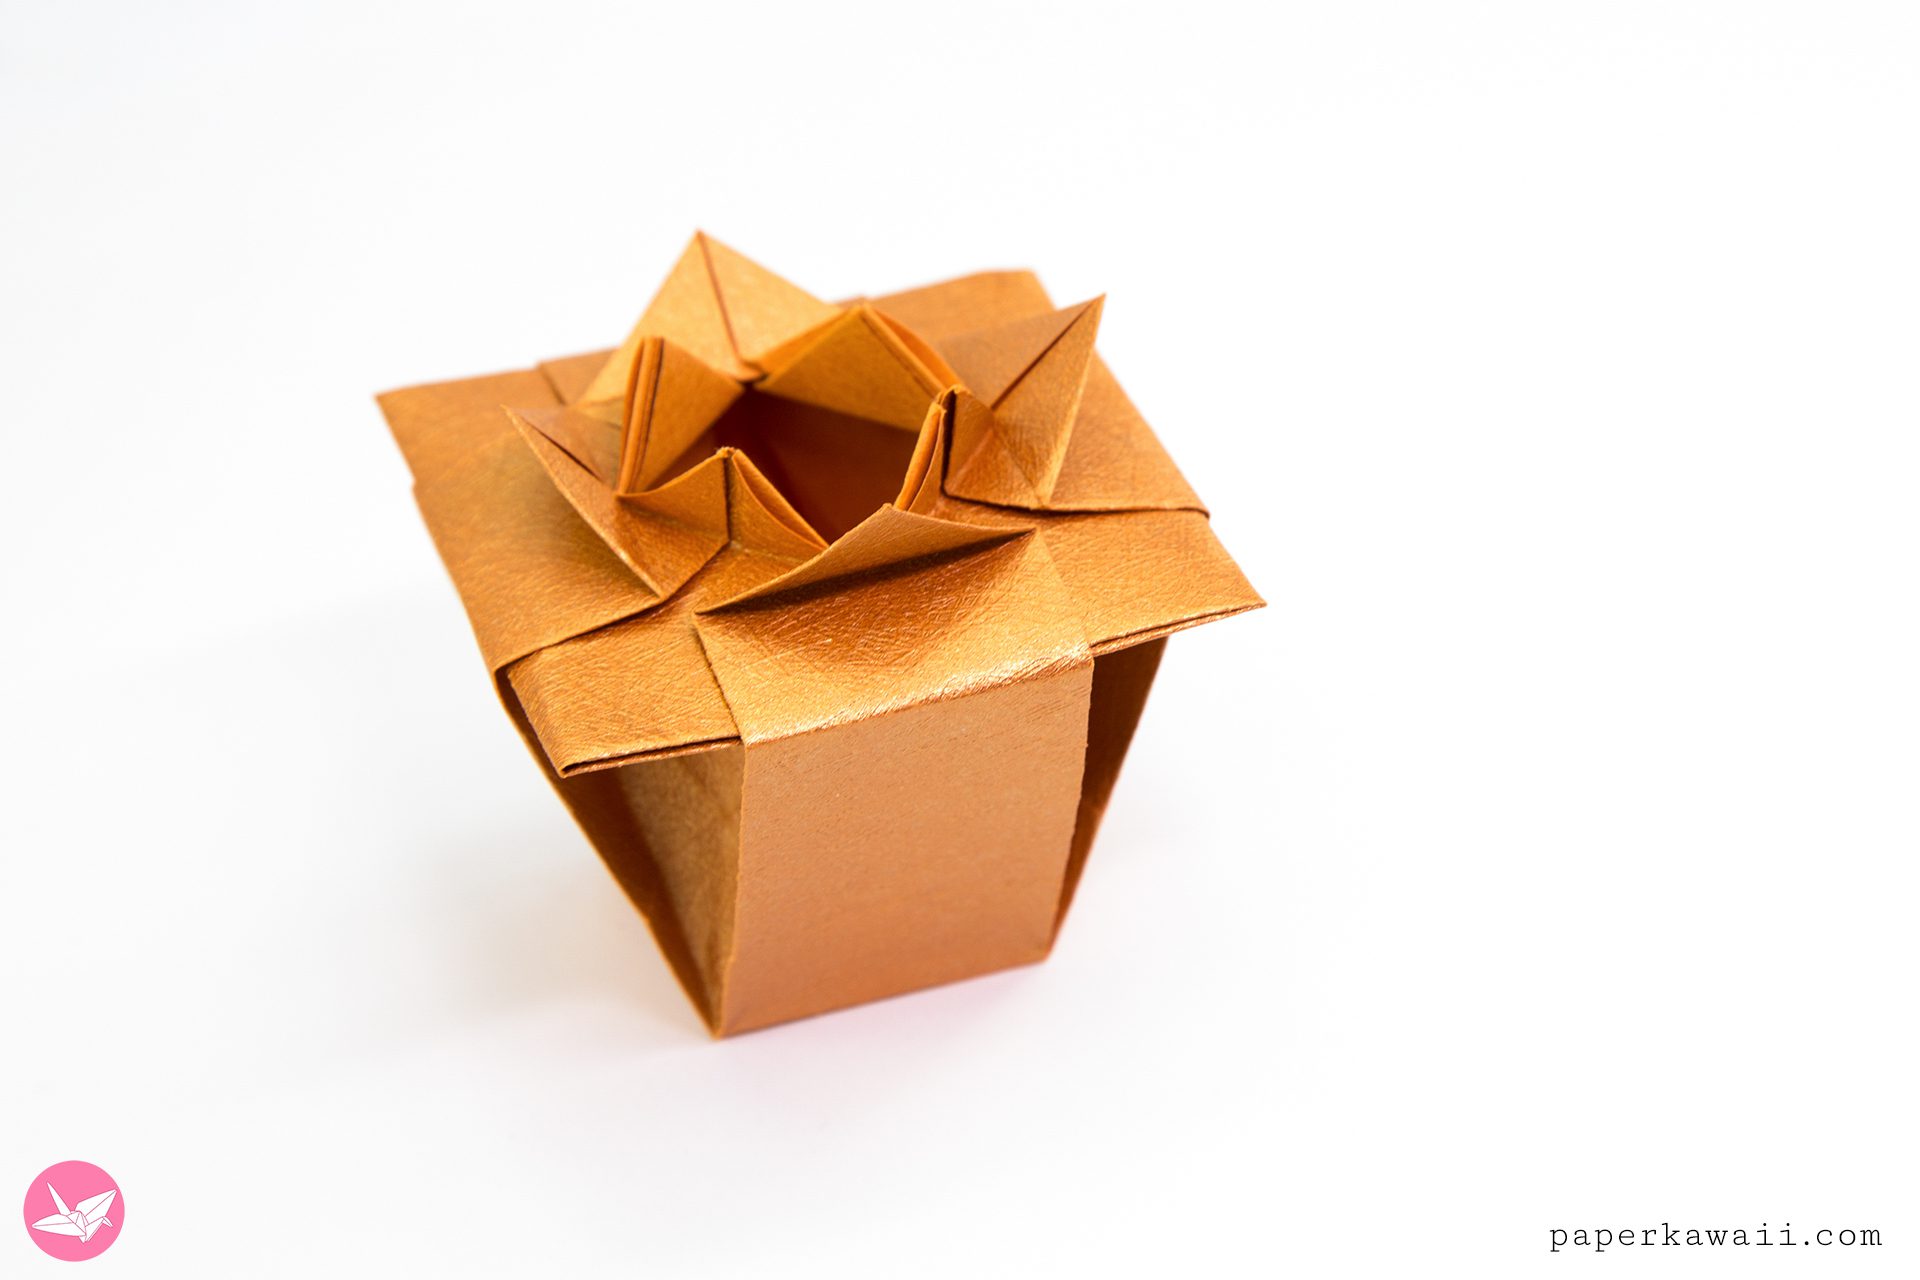 Origami Verdi's Vase